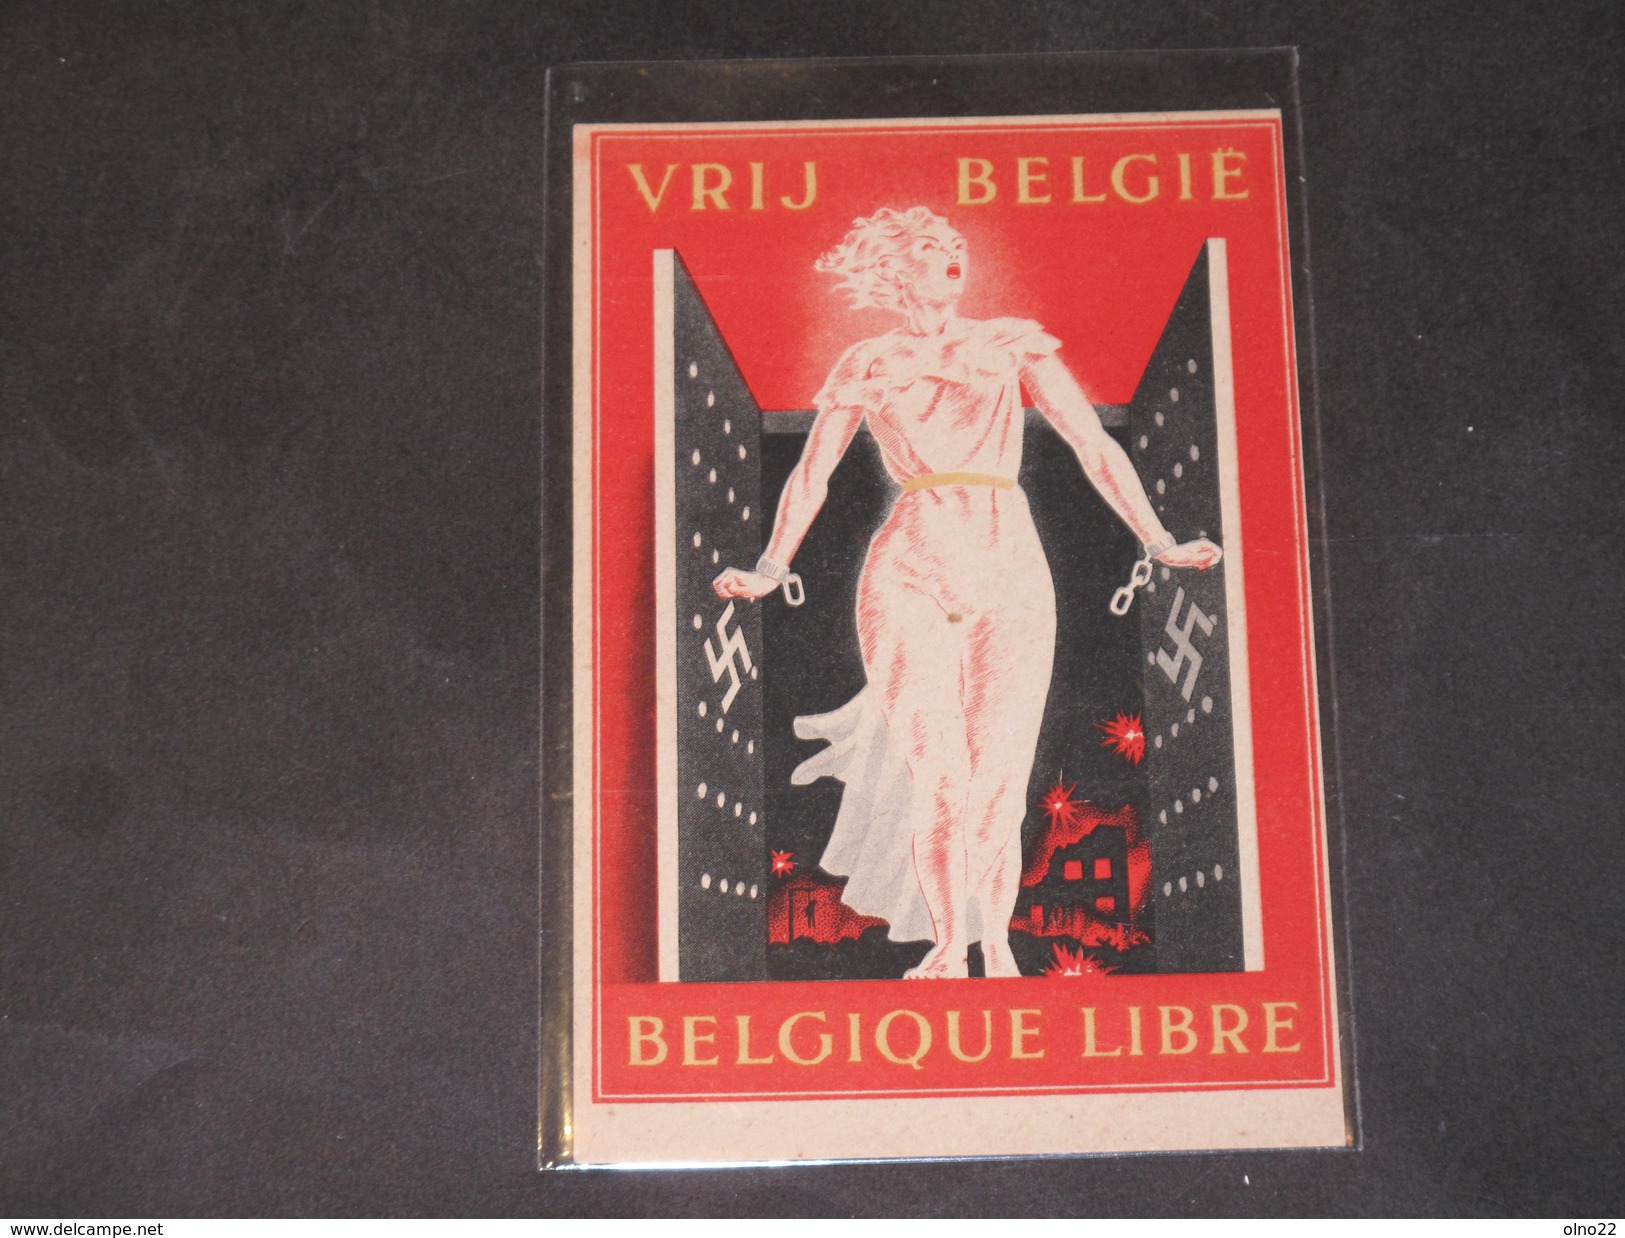 VRIJ BELGIE - BELGIQUE LIBRE - CPA Vendue Au Profit Des Détenus Civils. - Guerra 1939-45